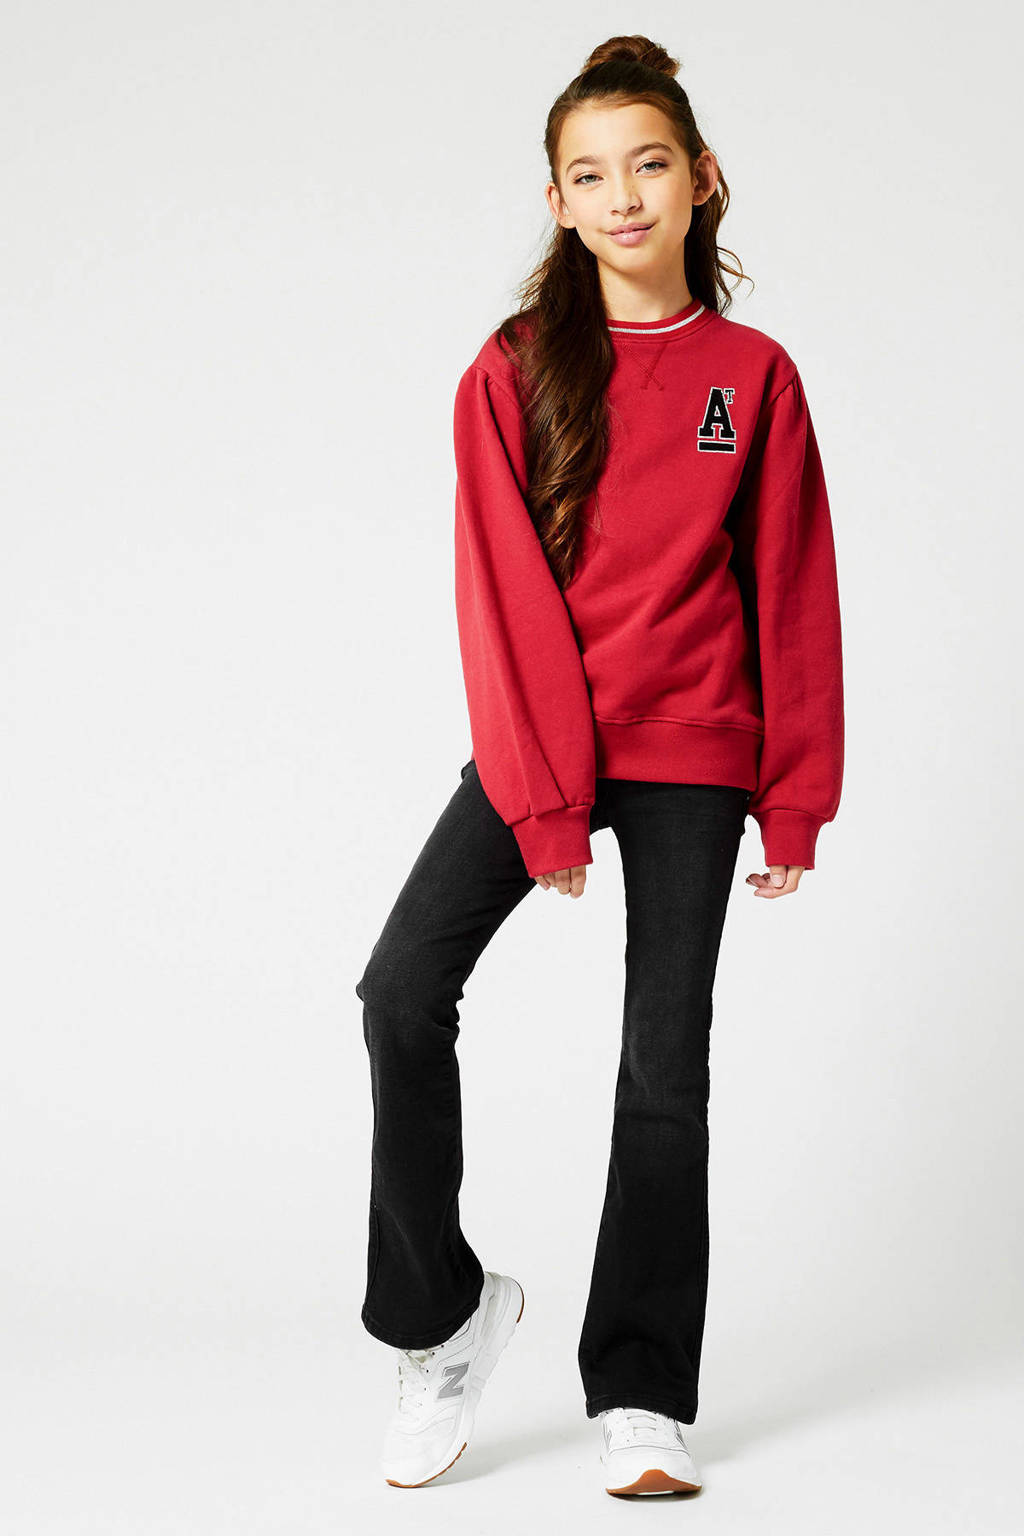 Rode meisjes America Today Junior sweater Selina JR met logo dessin, lange mouwen, ronde hals en elastische boord